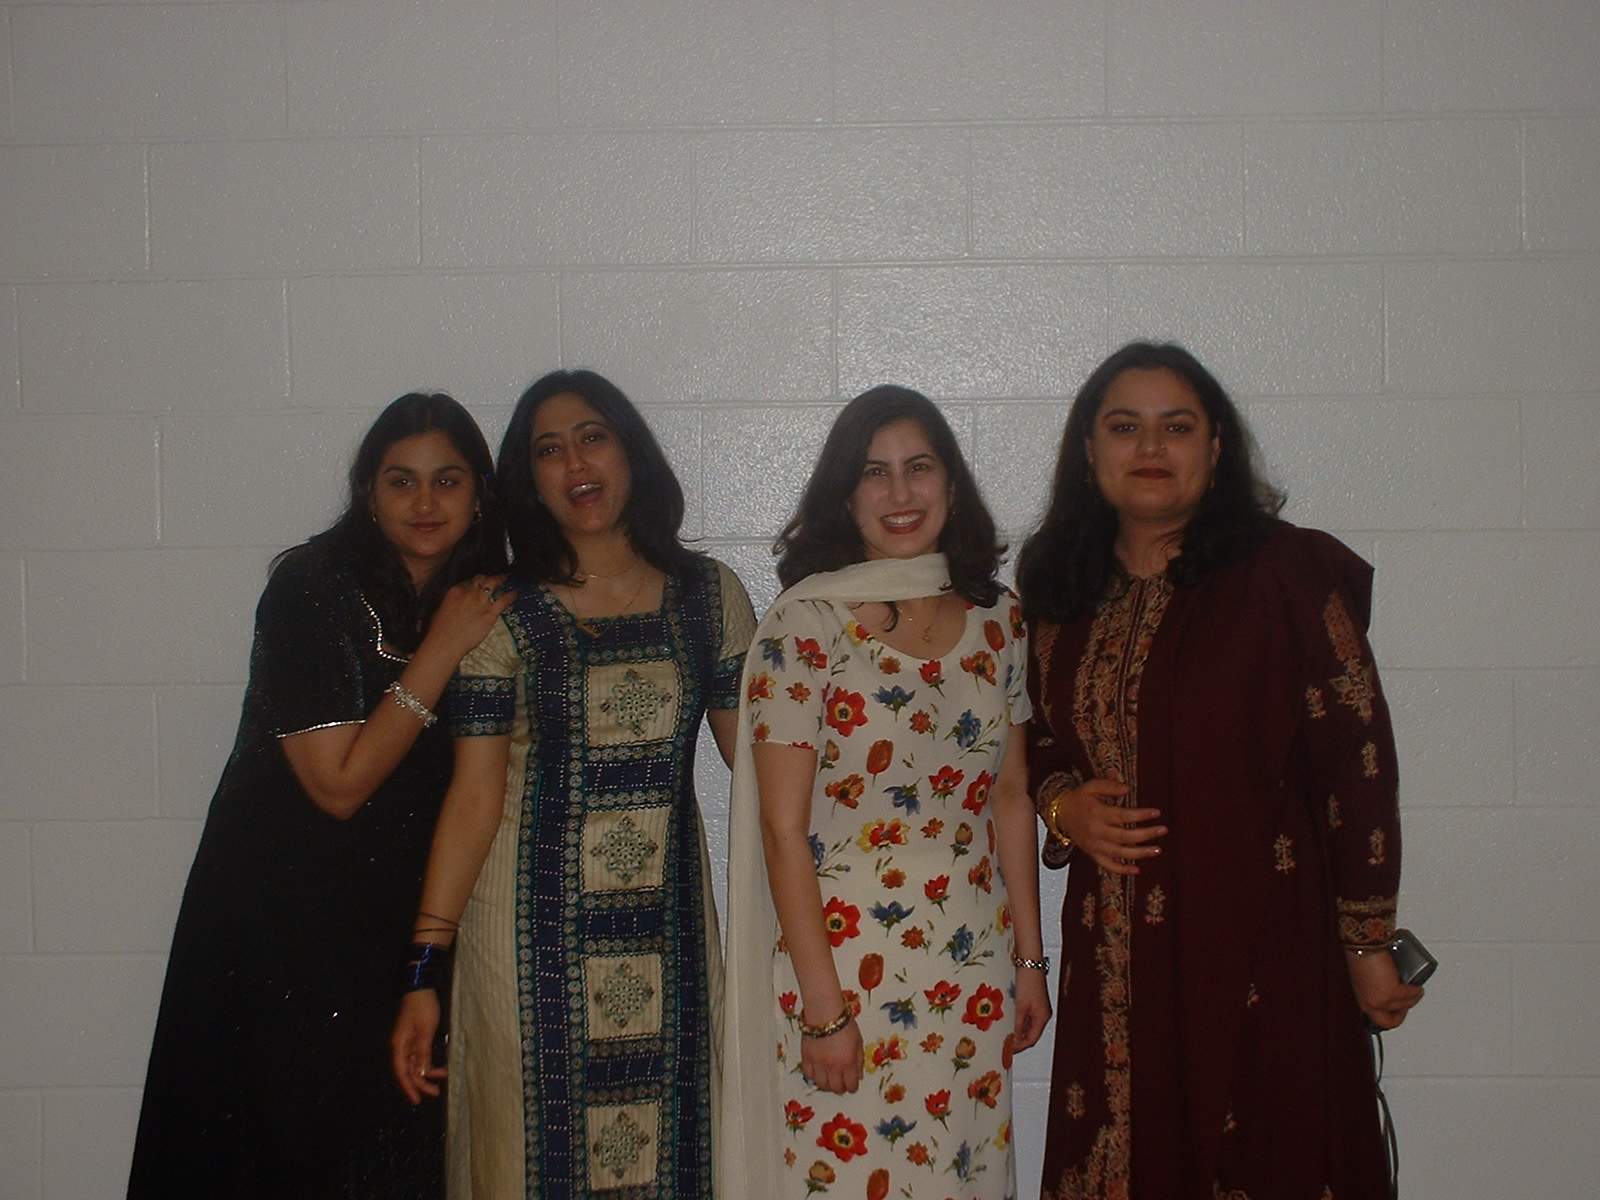 left to right: fariha, aisha, saleha, johi